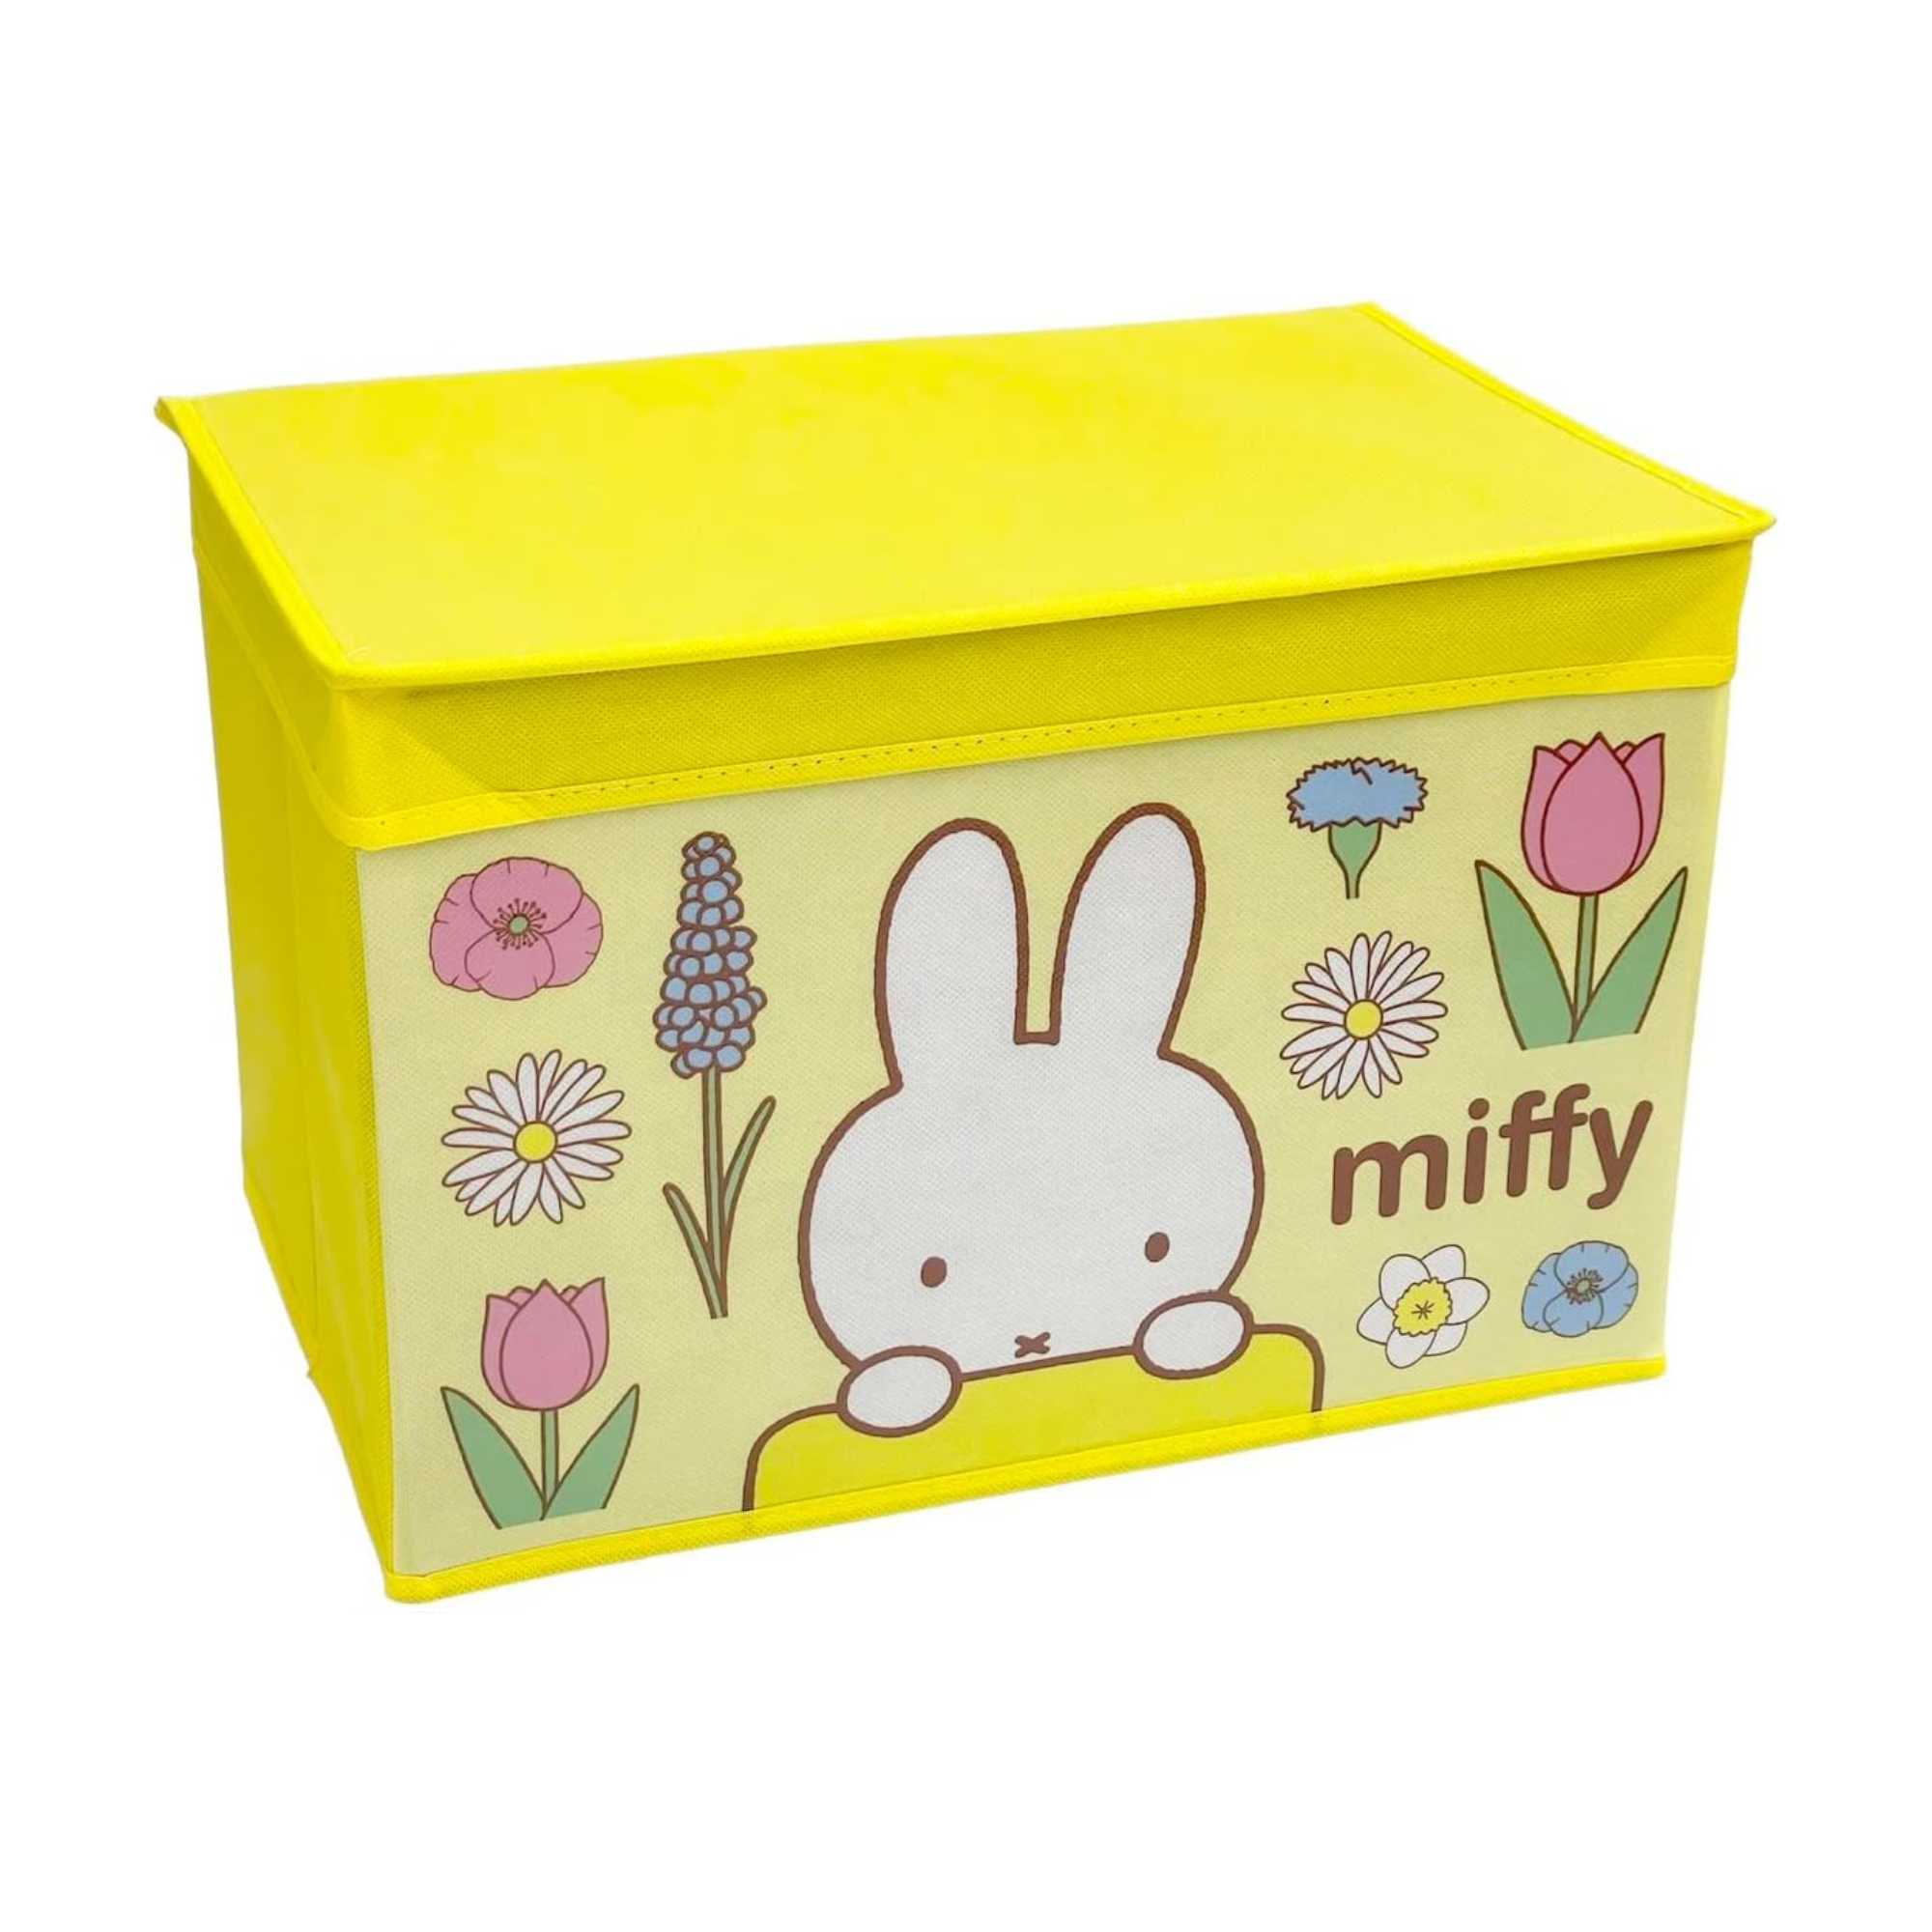 Miffy Storage Box (w38xd26xh26cm) , Yellow